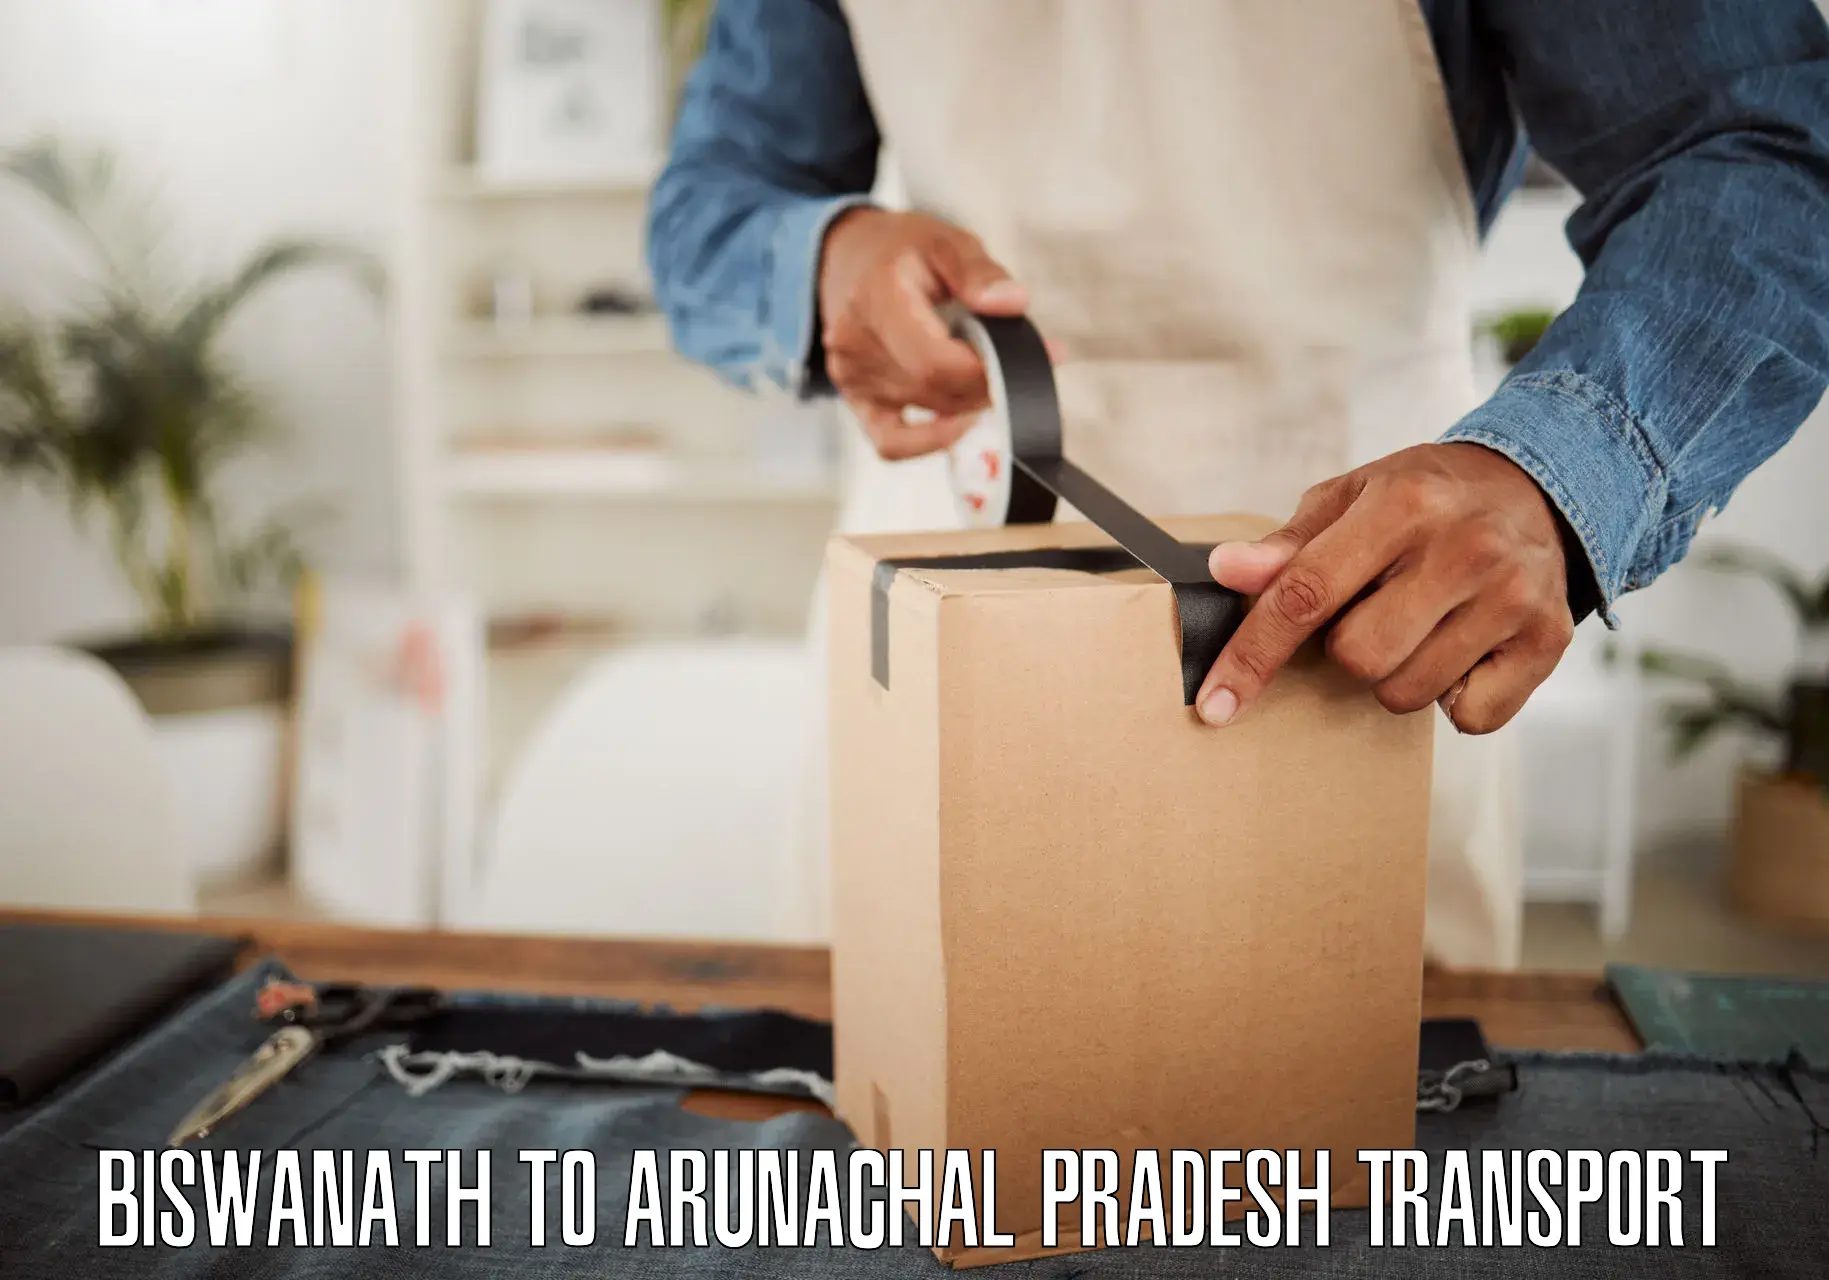 Luggage transport services Biswanath to Arunachal Pradesh